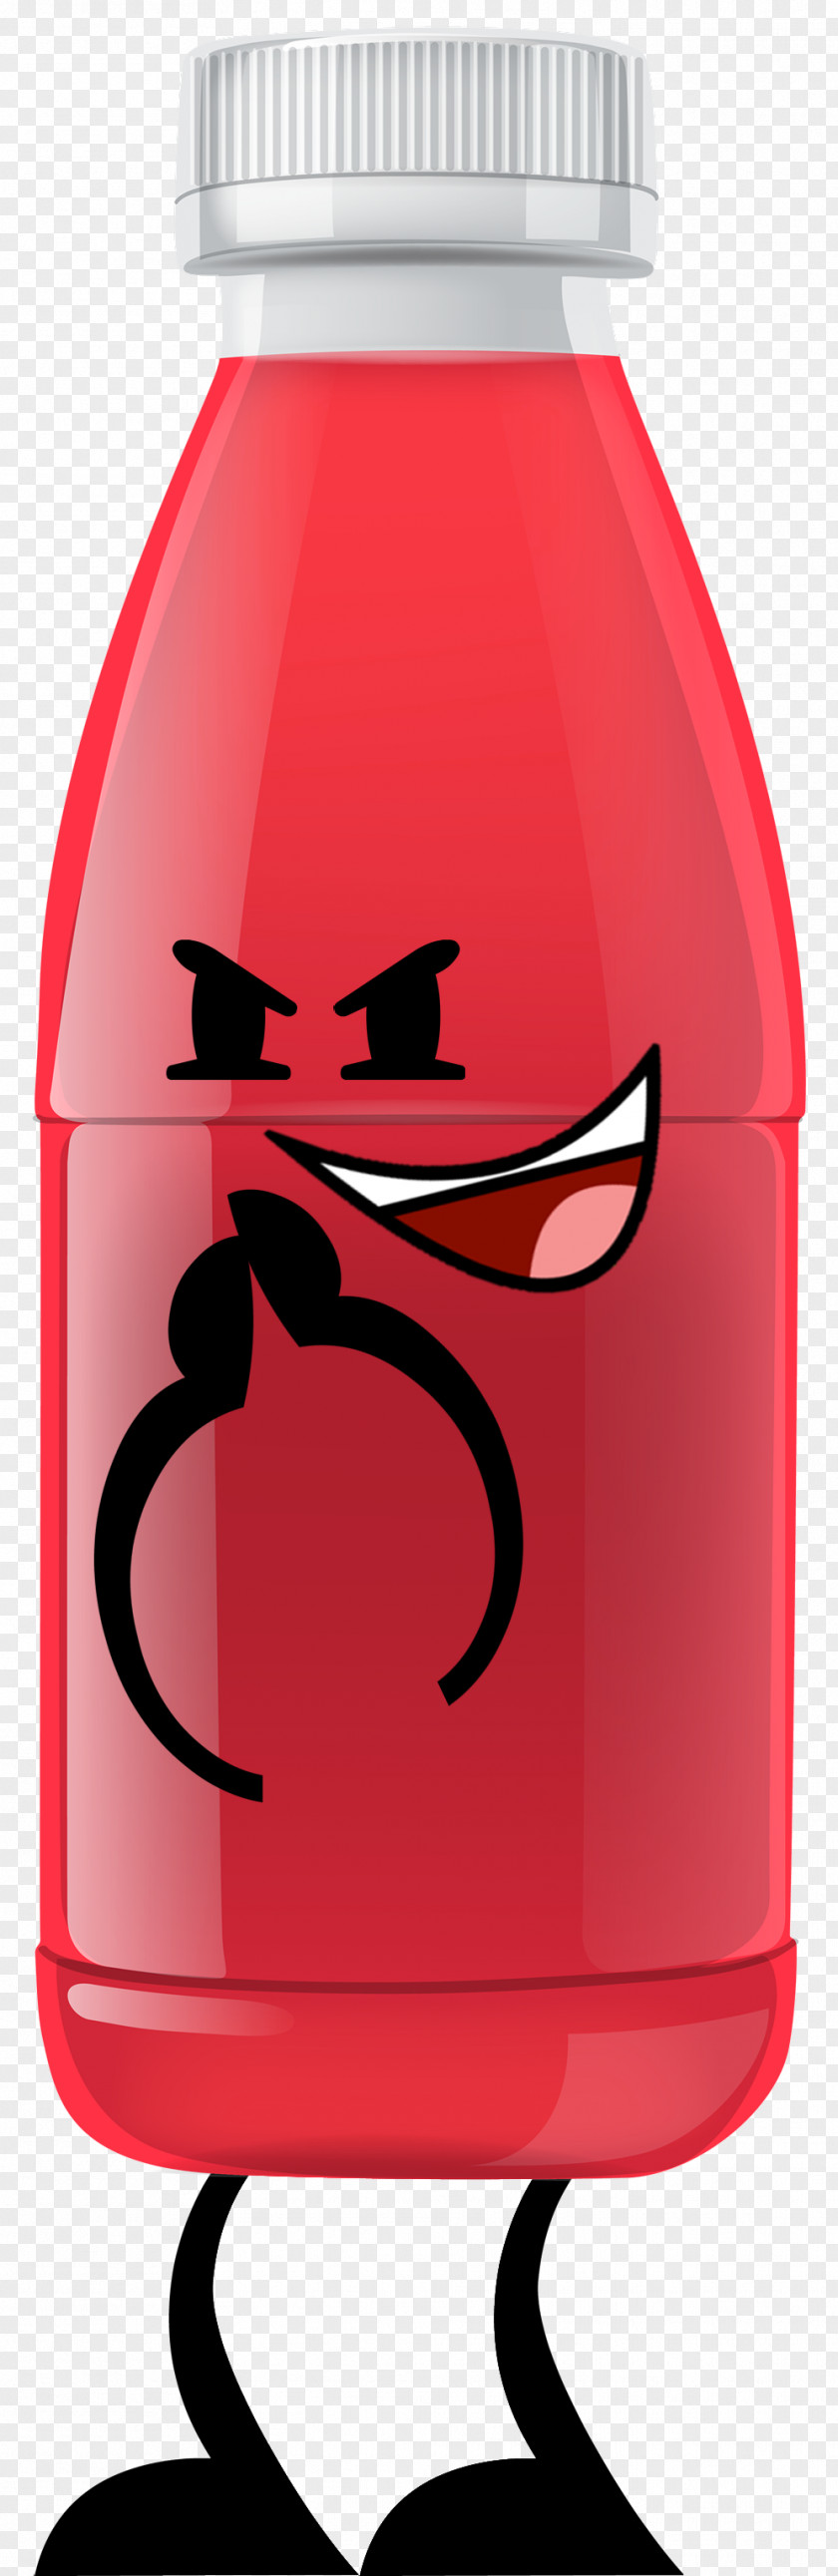 Big Red Orange Juice Apple Bottle Clip Art PNG